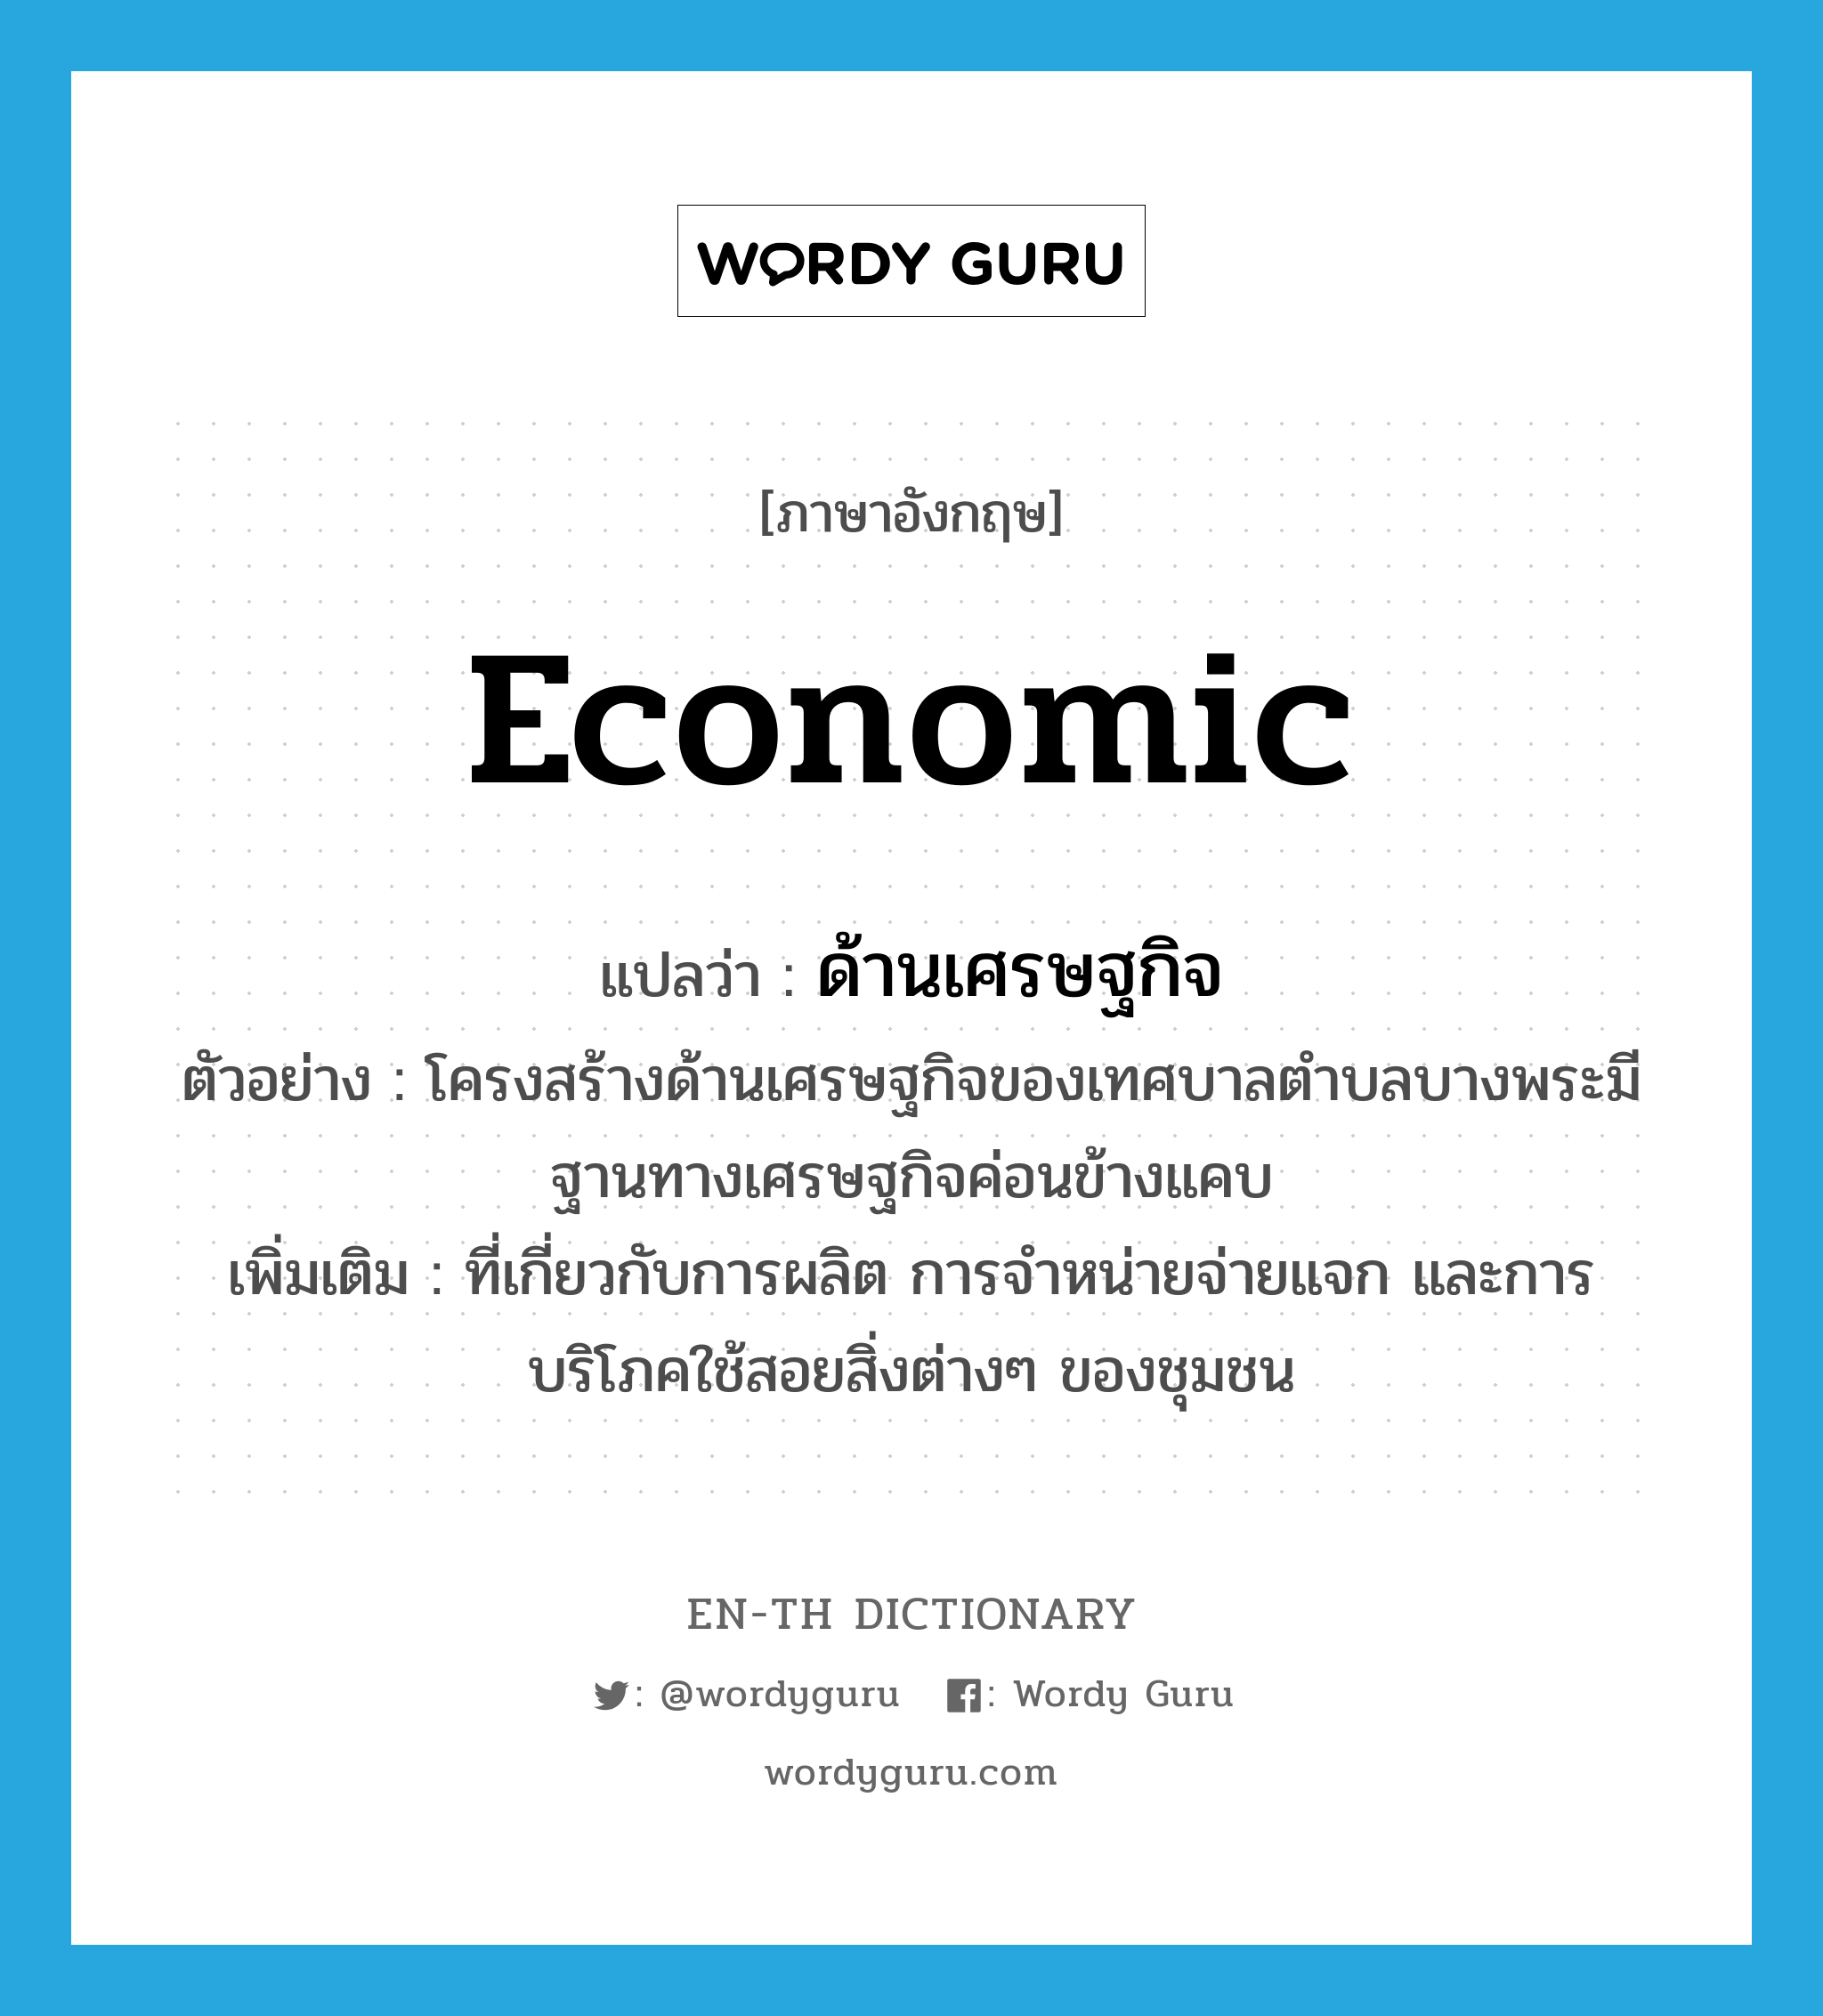 ด้านเศรษฐกิจ ภาษาอังกฤษ?, คำศัพท์ภาษาอังกฤษ ด้านเศรษฐกิจ แปลว่า economic ประเภท ADJ ตัวอย่าง โครงสร้างด้านเศรษฐกิจของเทศบาลตำบลบางพระมีฐานทางเศรษฐกิจค่อนข้างแคบ เพิ่มเติม ที่เกี่ยวกับการผลิต การจำหน่ายจ่ายแจก และการบริโภคใช้สอยสิ่งต่างๆ ของชุมชน หมวด ADJ